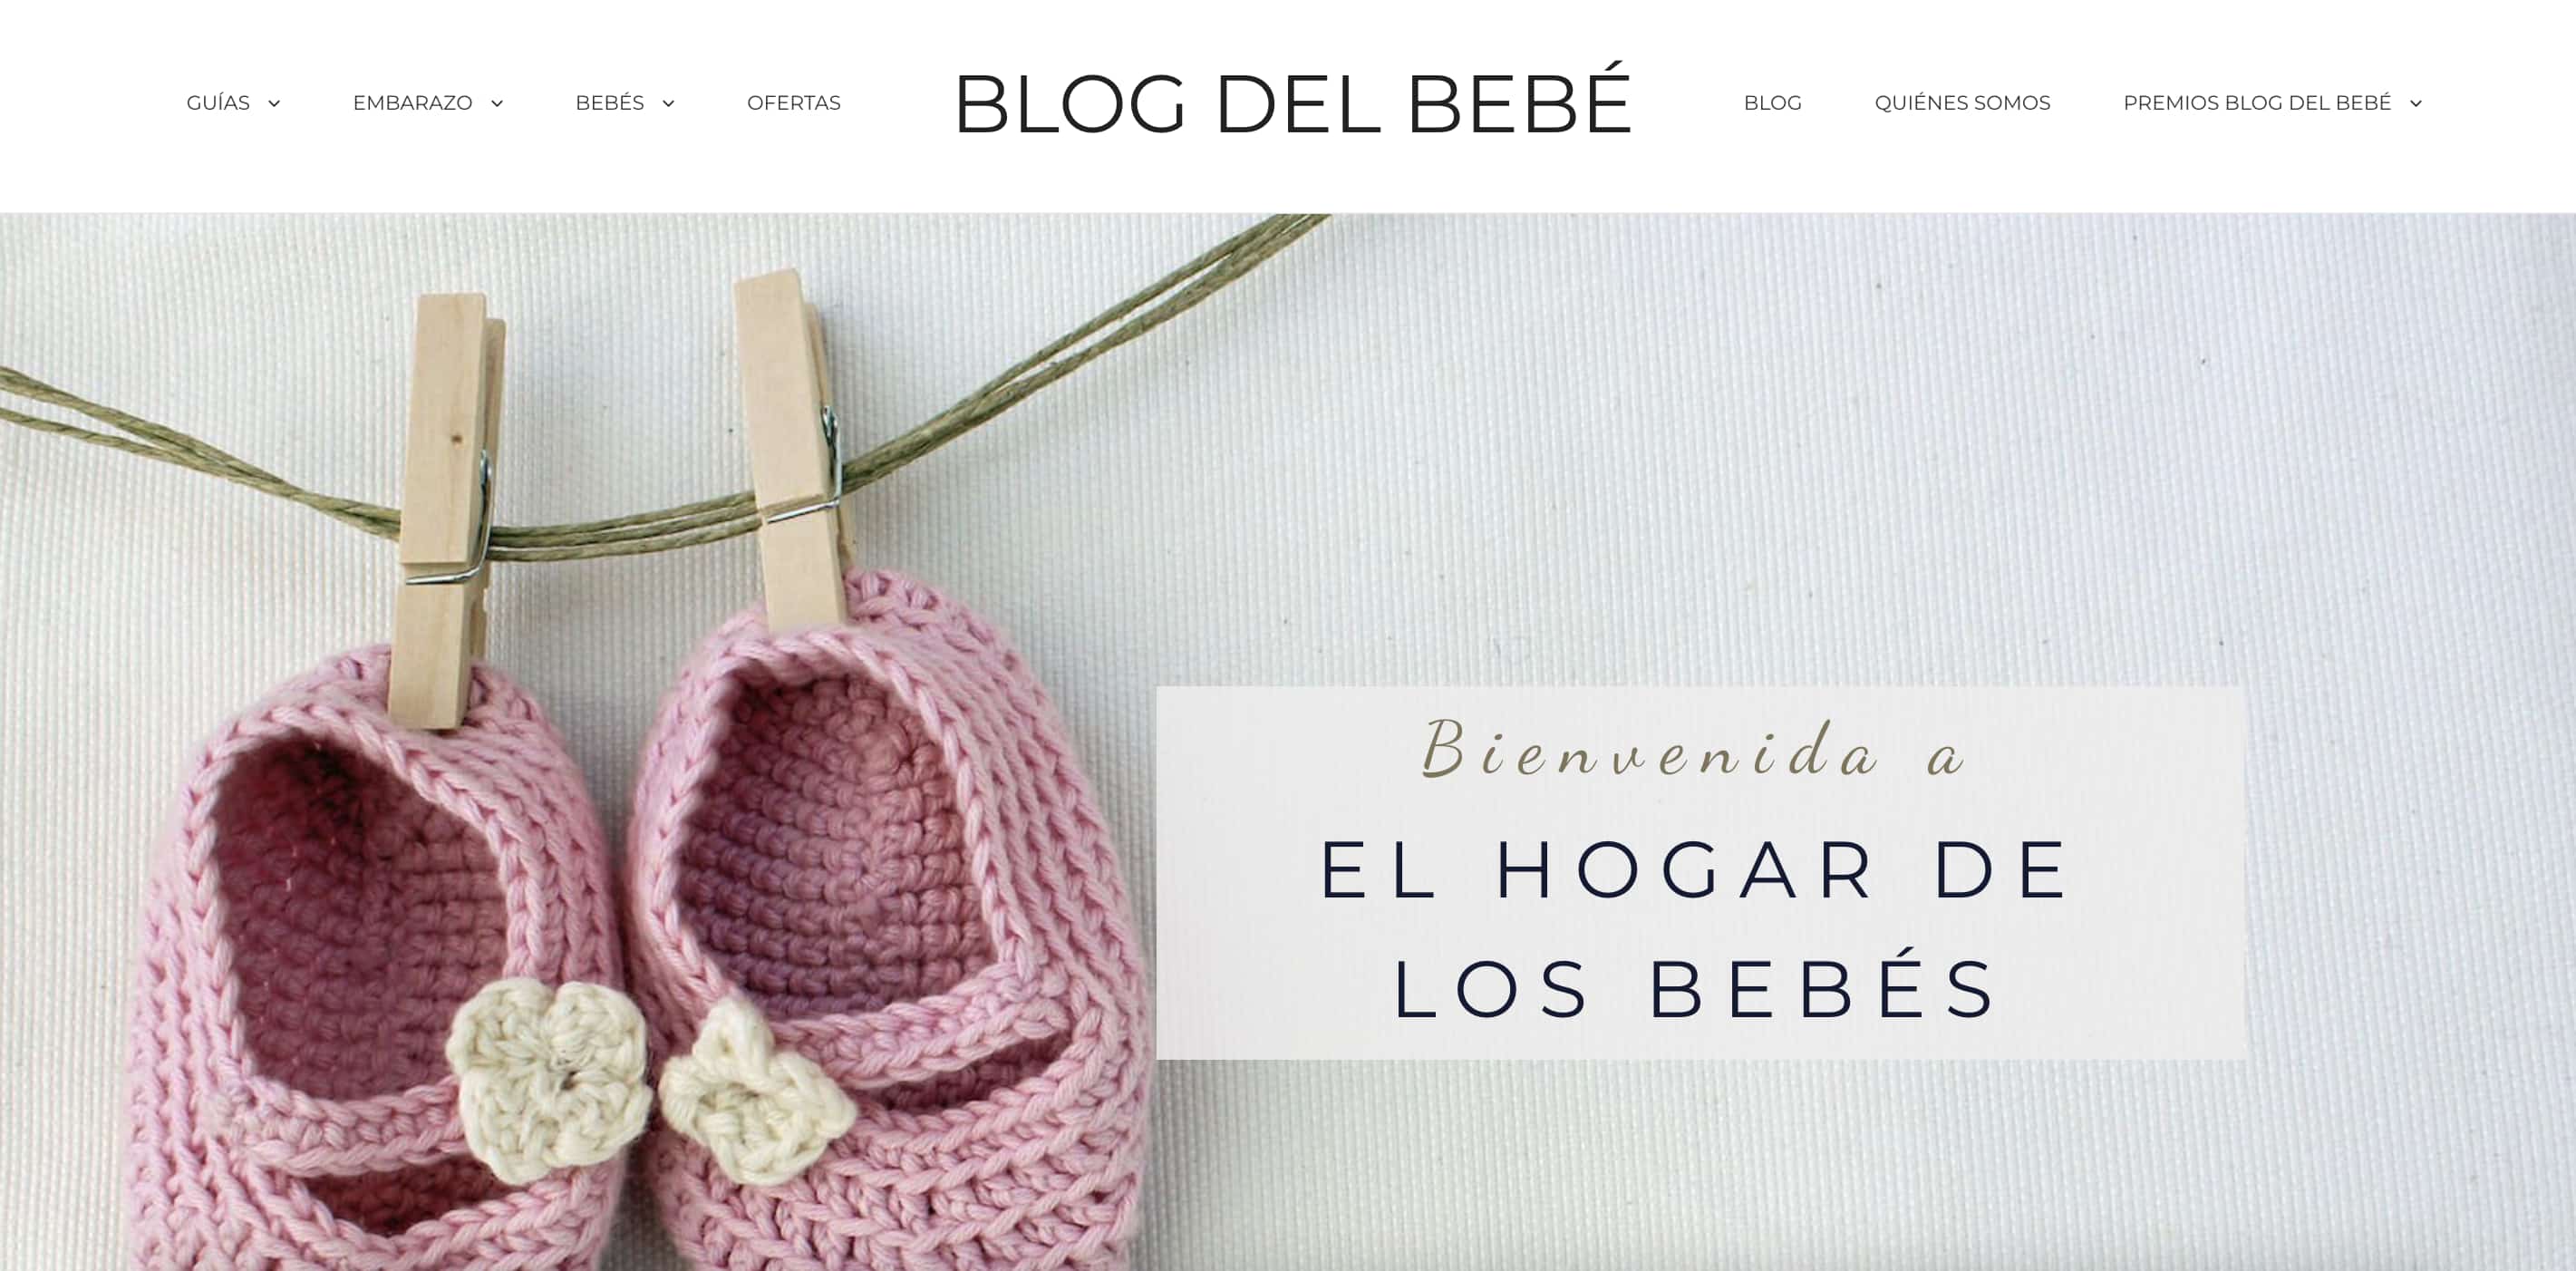 Ejemplos de nombres de blog: Blog del bebé